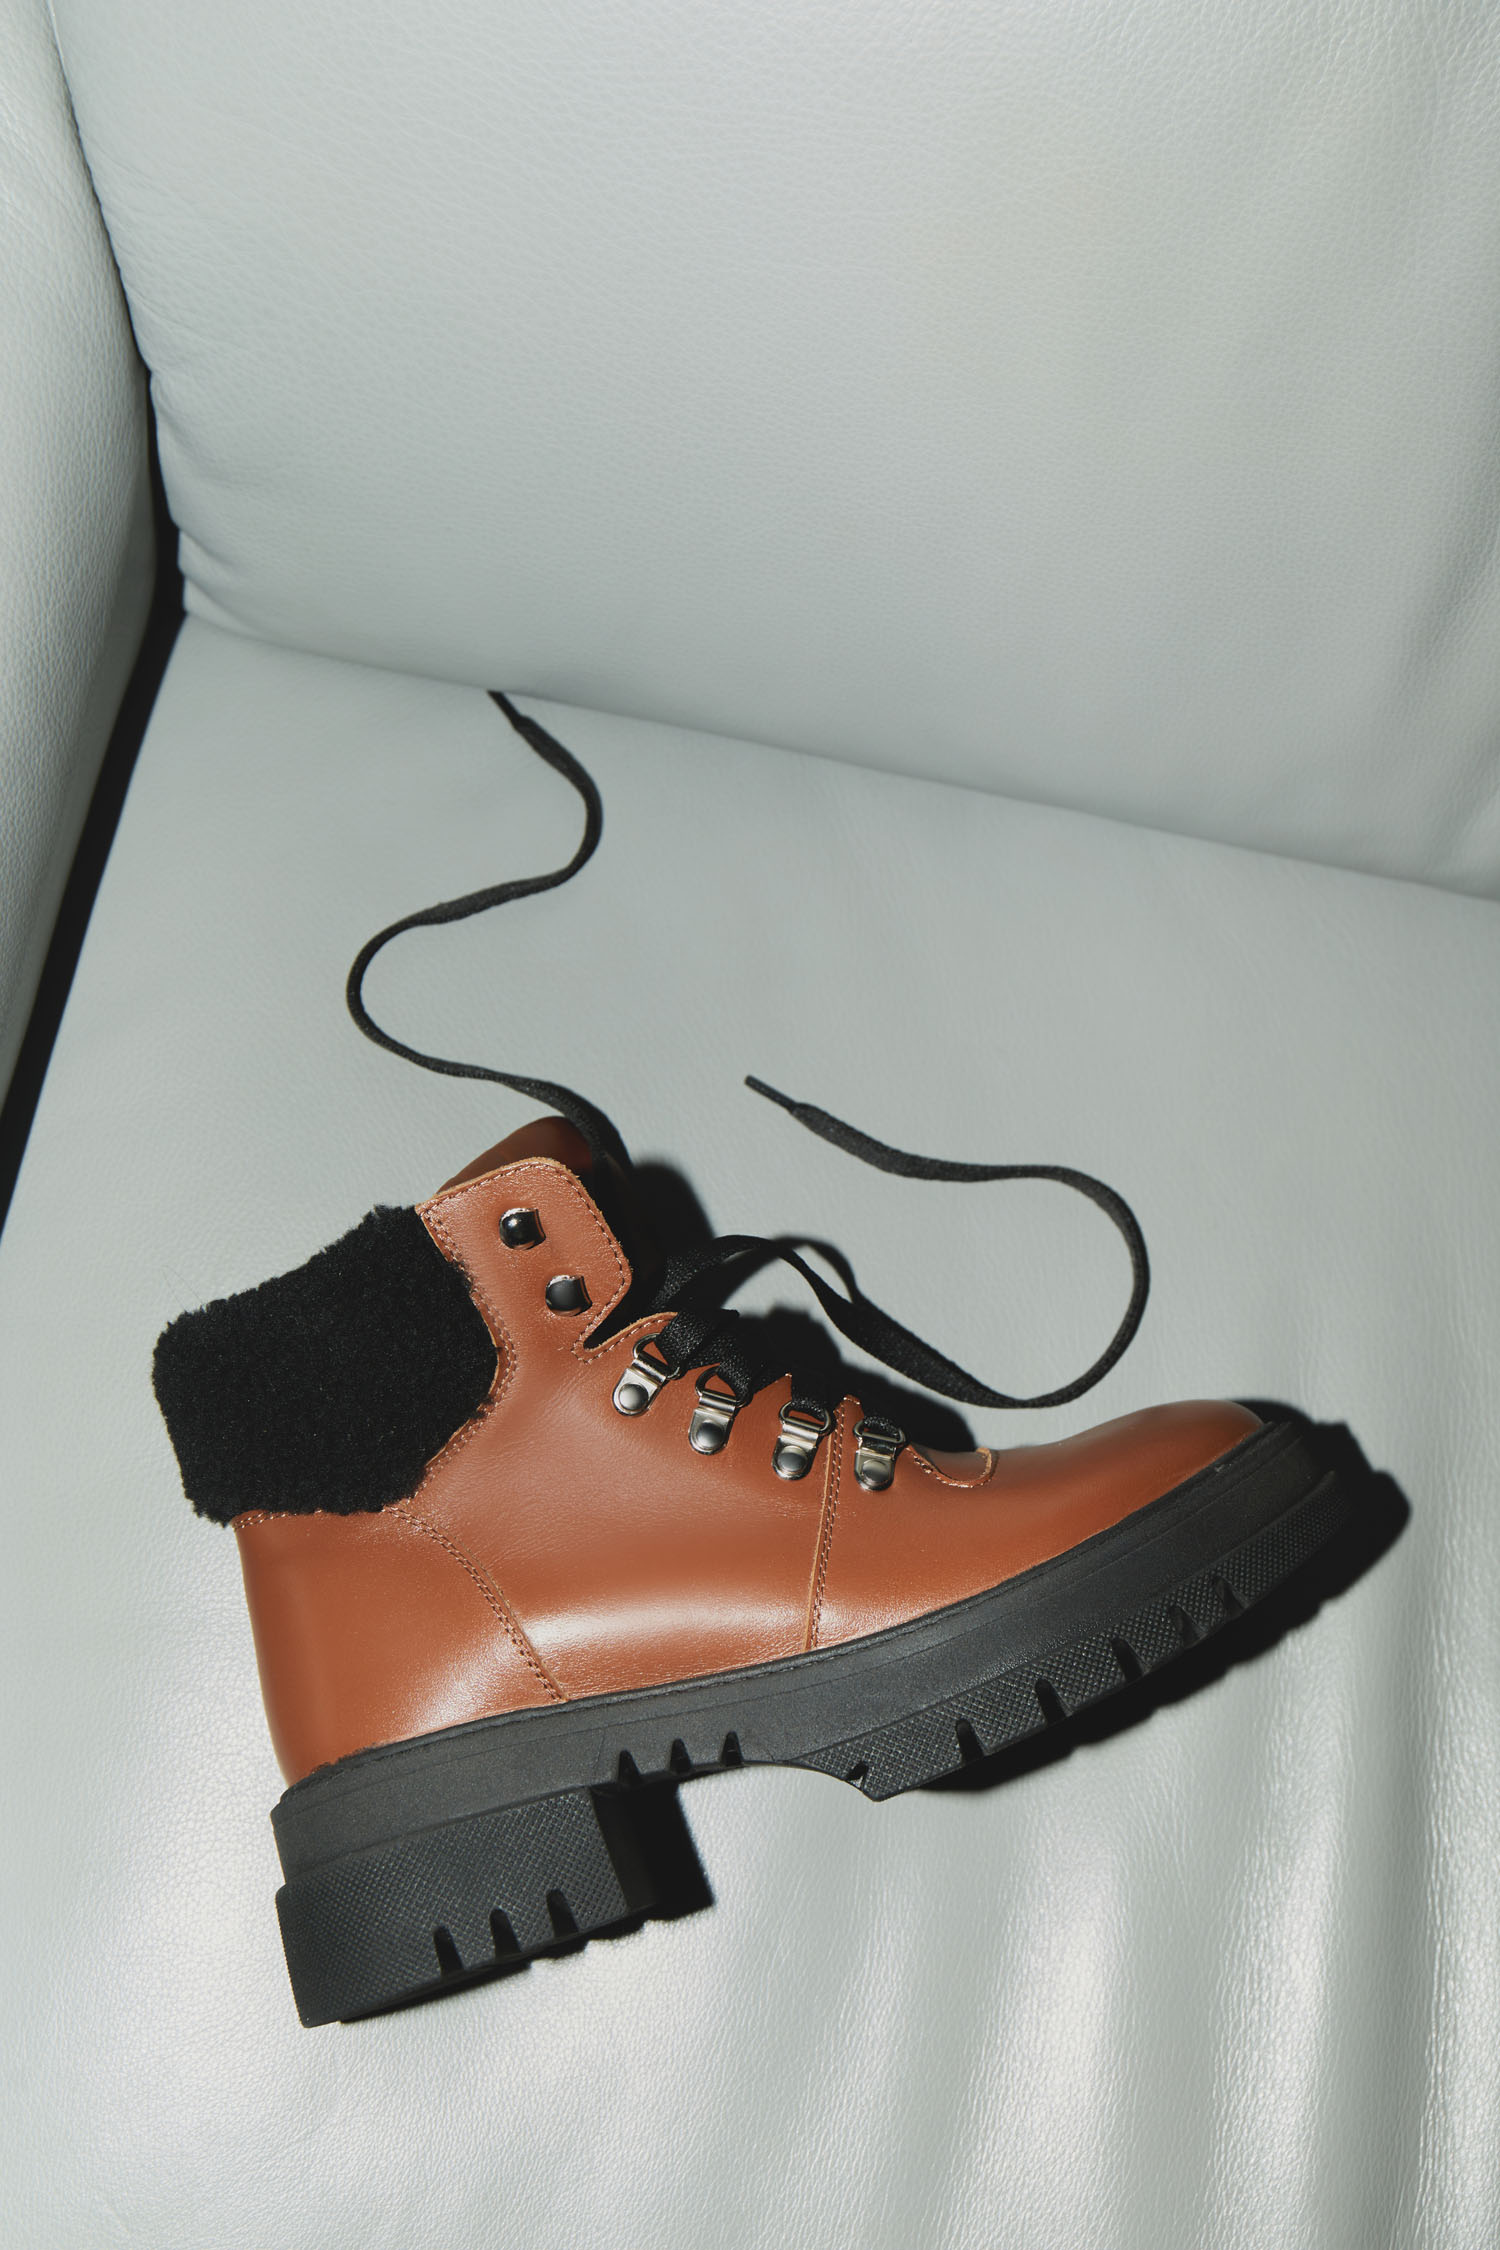 Зимові черевики Hiking boots кемел з чорним хутром - THE LACE фото 124342